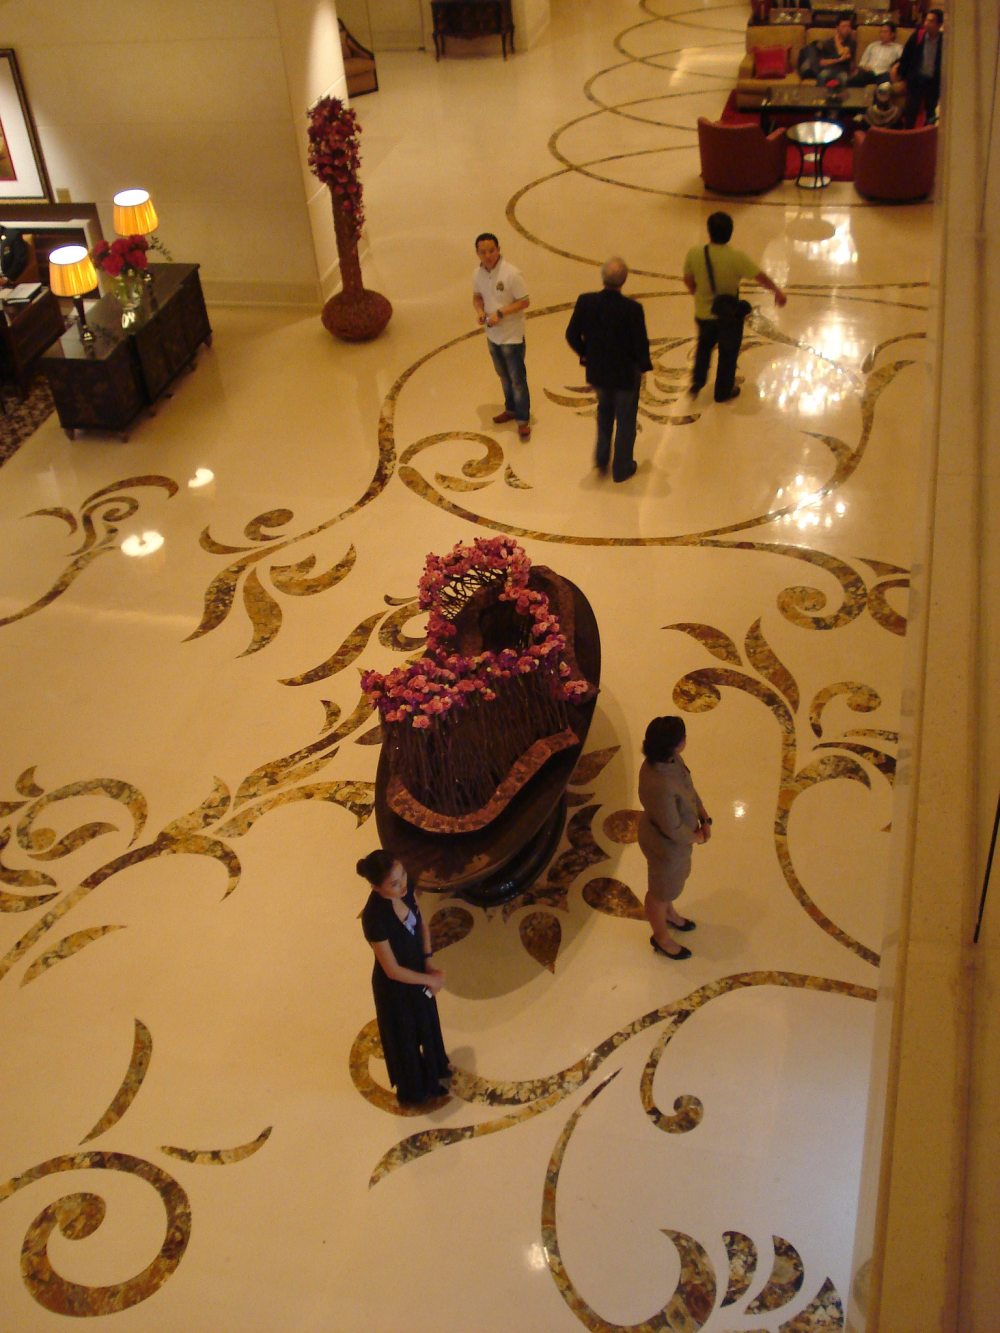 新加坡瑞吉酒店 he St. Regis Singapore_DSC04297.JPG